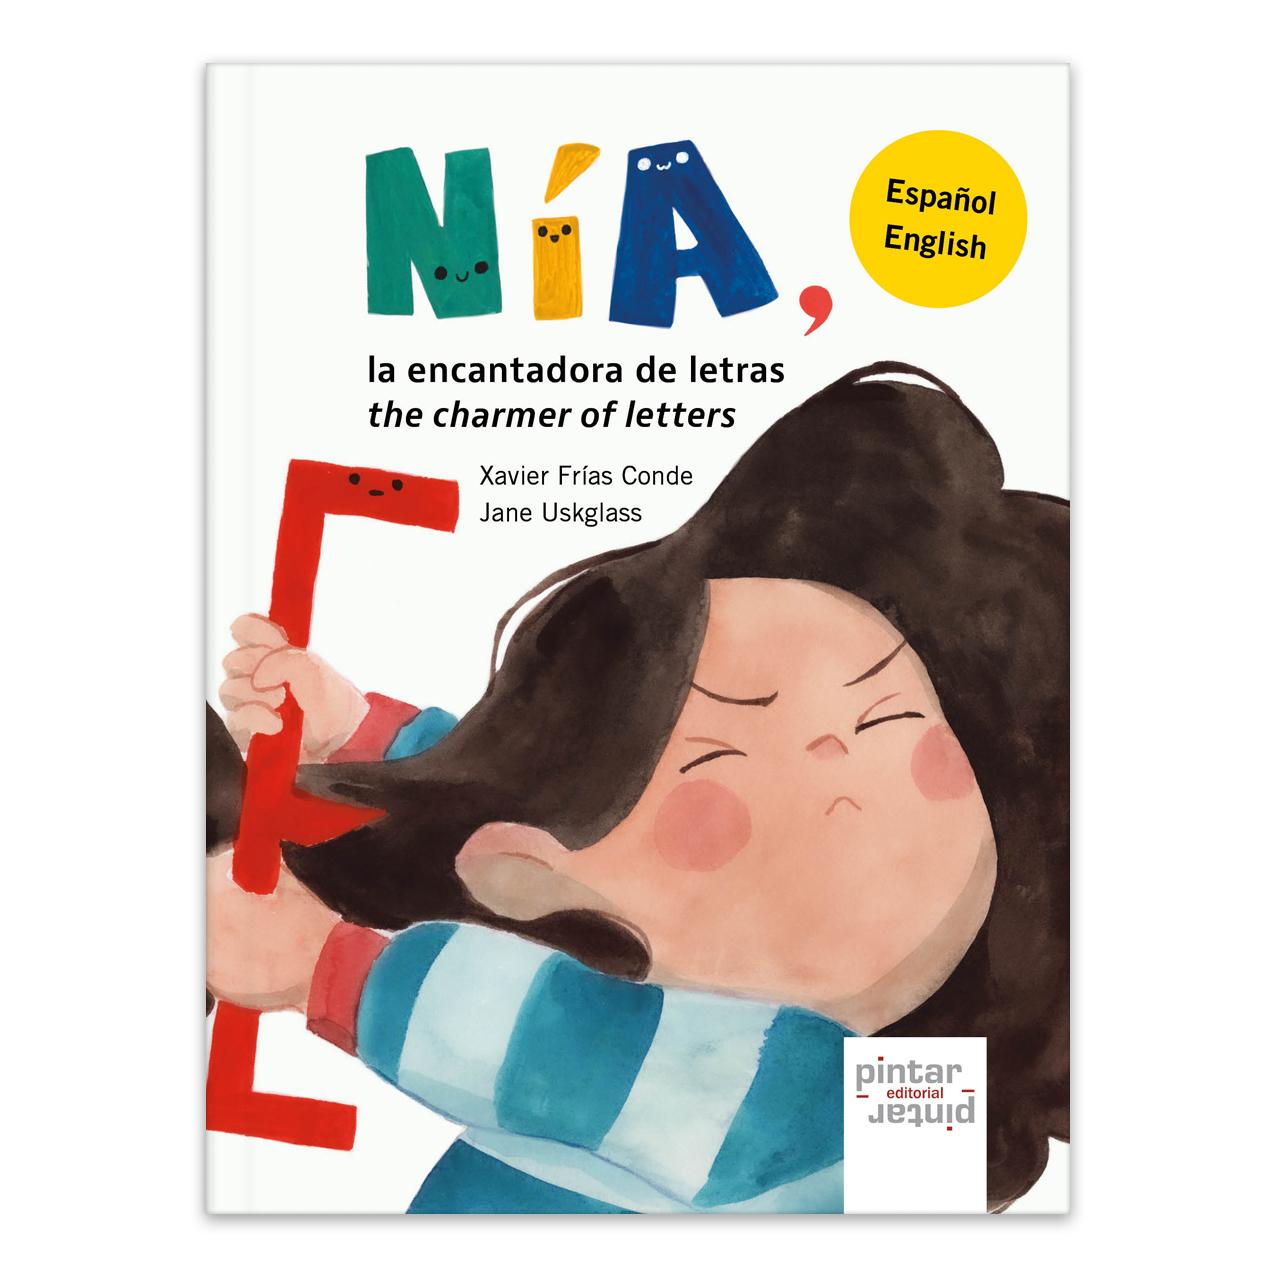 Nía, la encantadora de letras / Nía, the charmer of letters